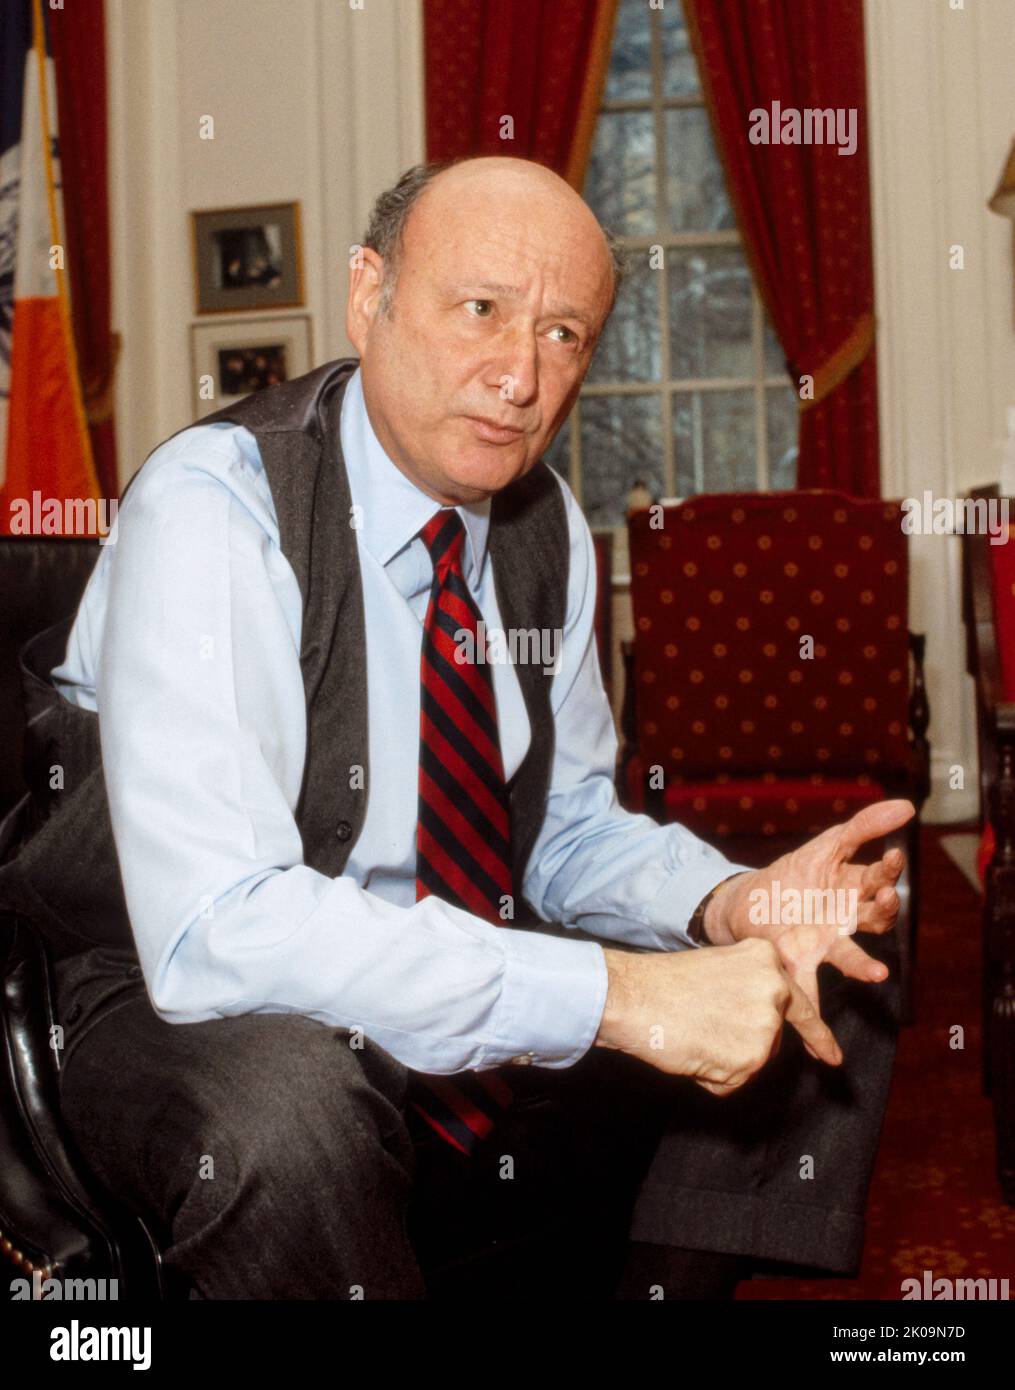 Edward Irving Koch (1924 - 2013) war ein amerikanischer Politiker, Rechtsanwalt, politischer Kommentator, Filmkritiker und Fernsehpersönlichkeit. Er diente von 1969 bis 1977 im Repräsentantenhaus der Vereinigten Staaten und war von 1978 bis 1989 Bürgermeister von New York City. Stockfoto